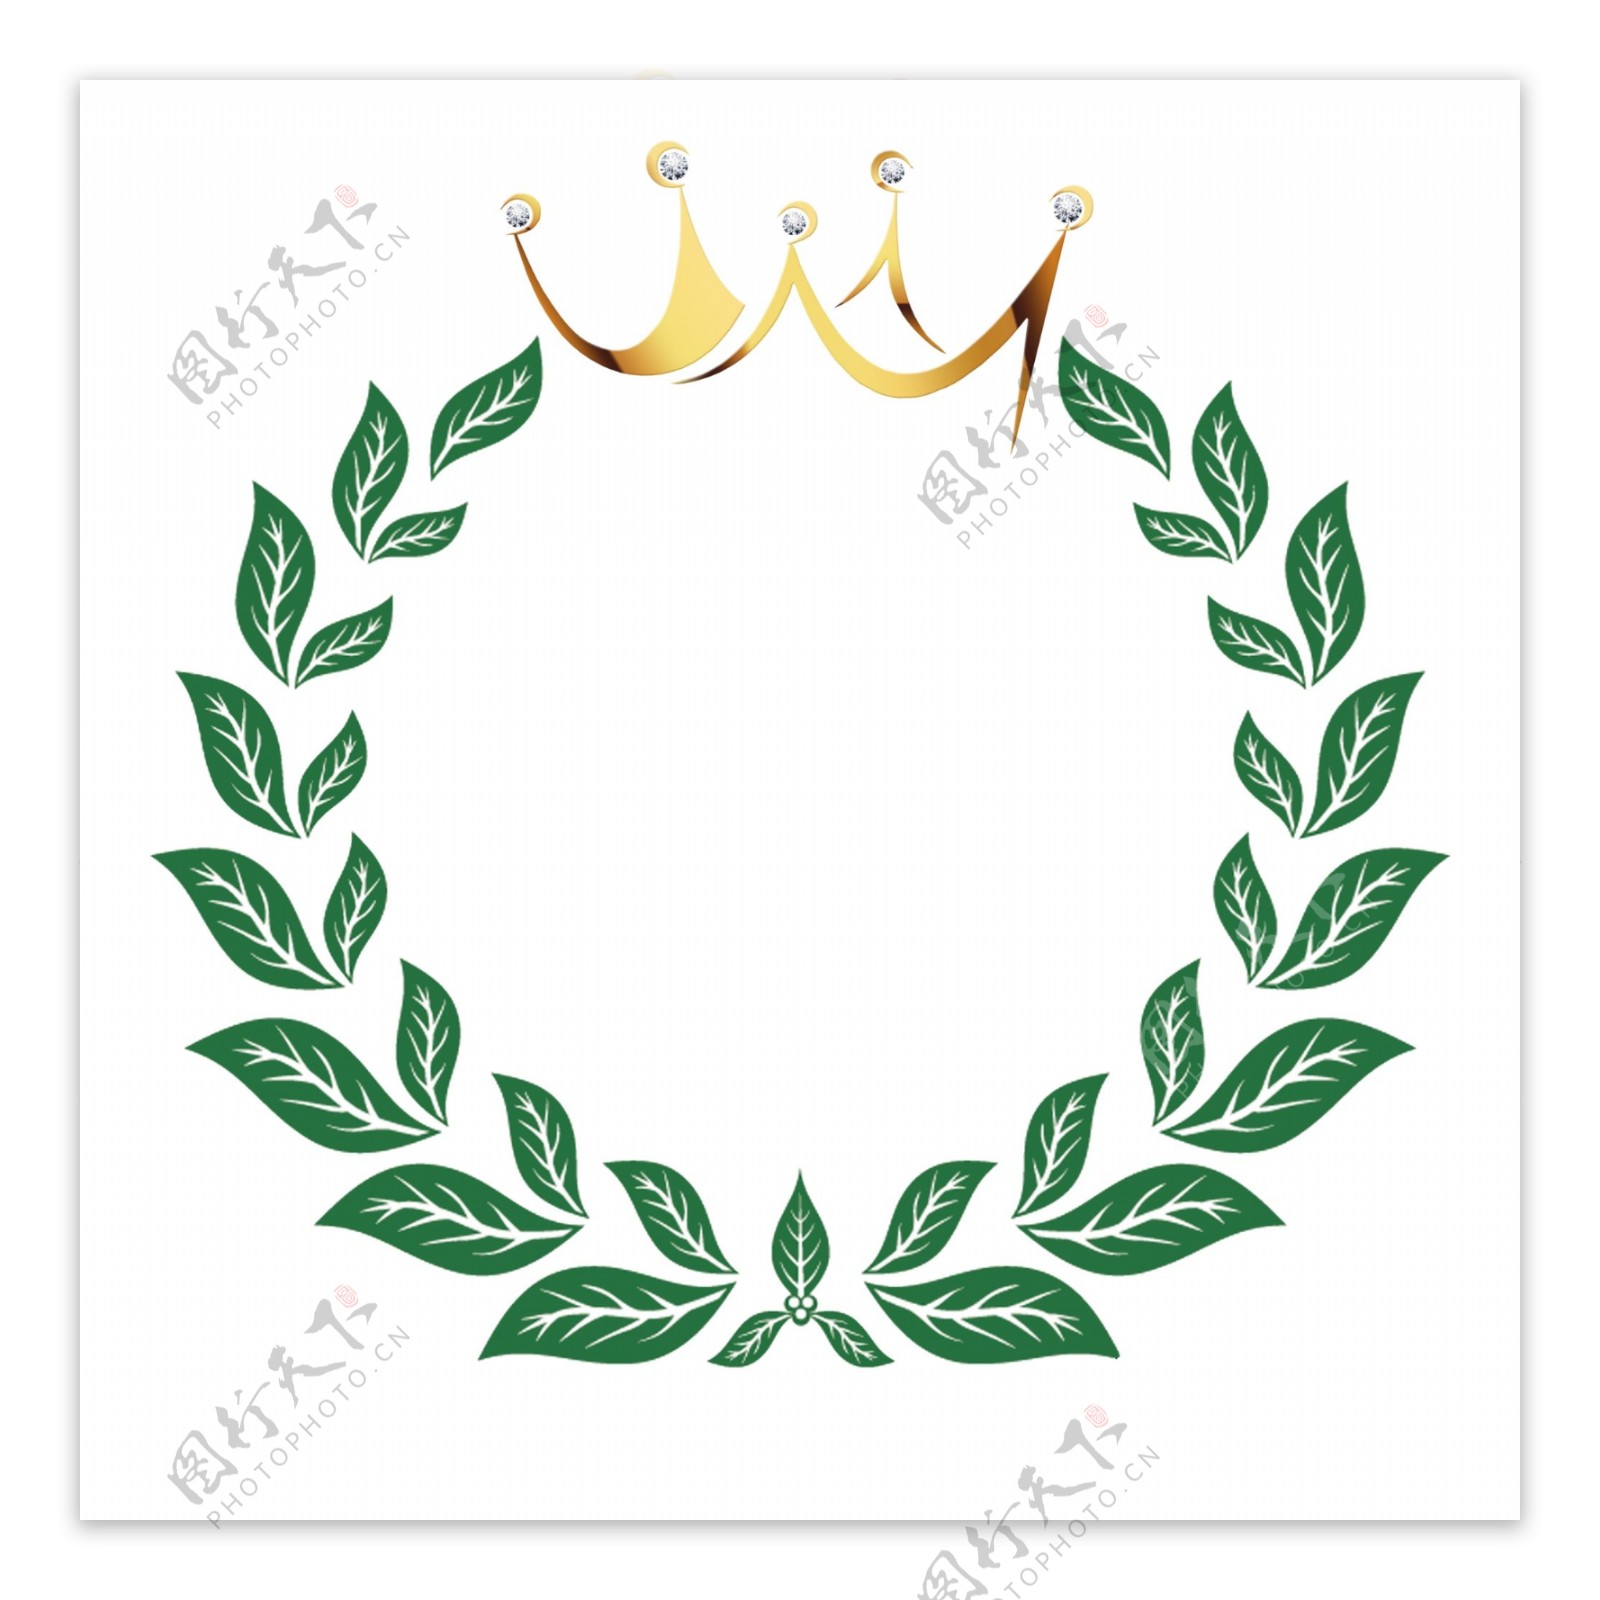 皇冠树叶logo